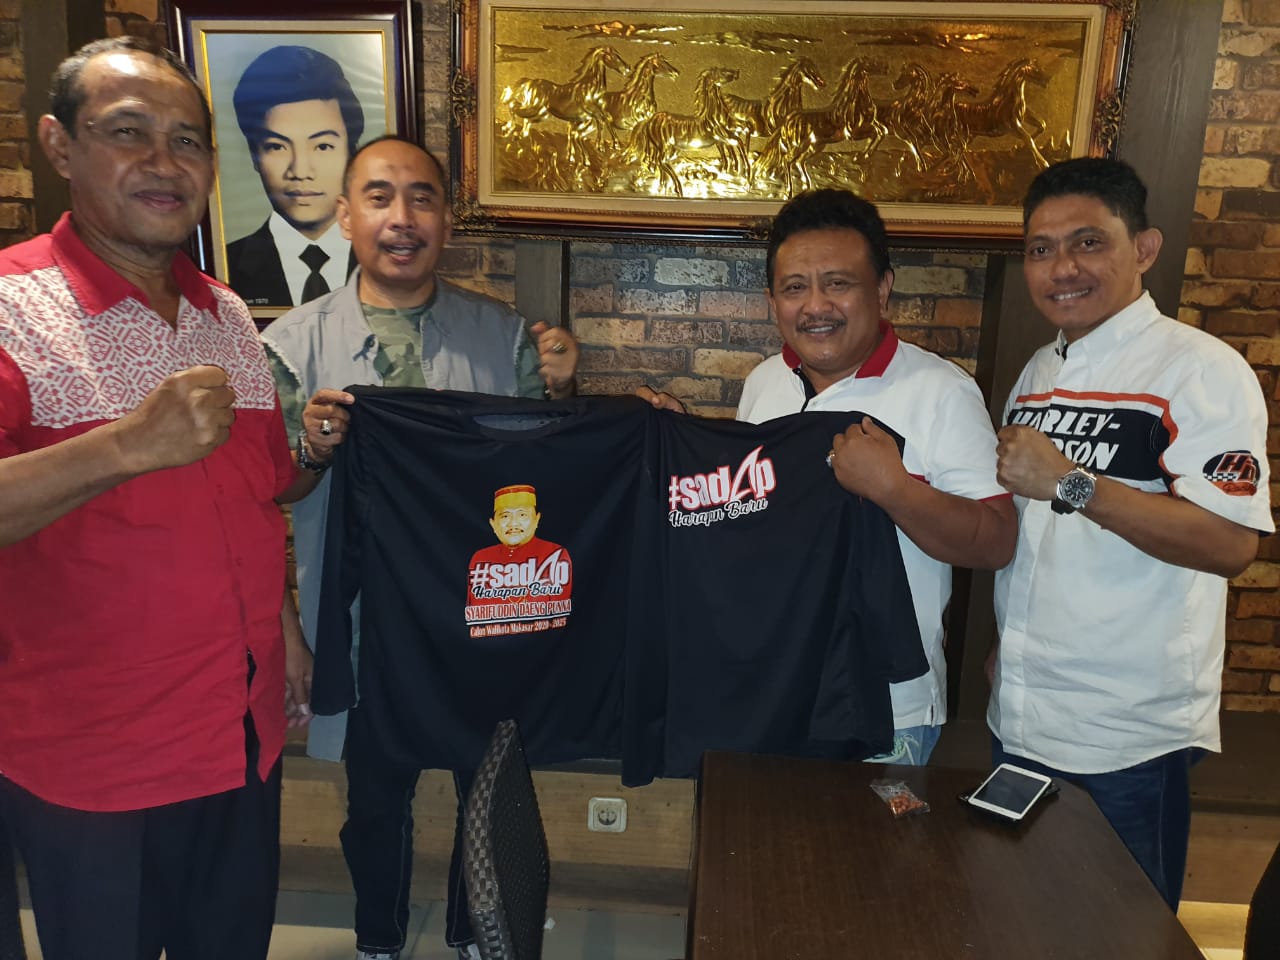 Pengusaha Nasional Sumbang 1000 Baju untuk Kemenangan Sadap di Pilwali Makassar